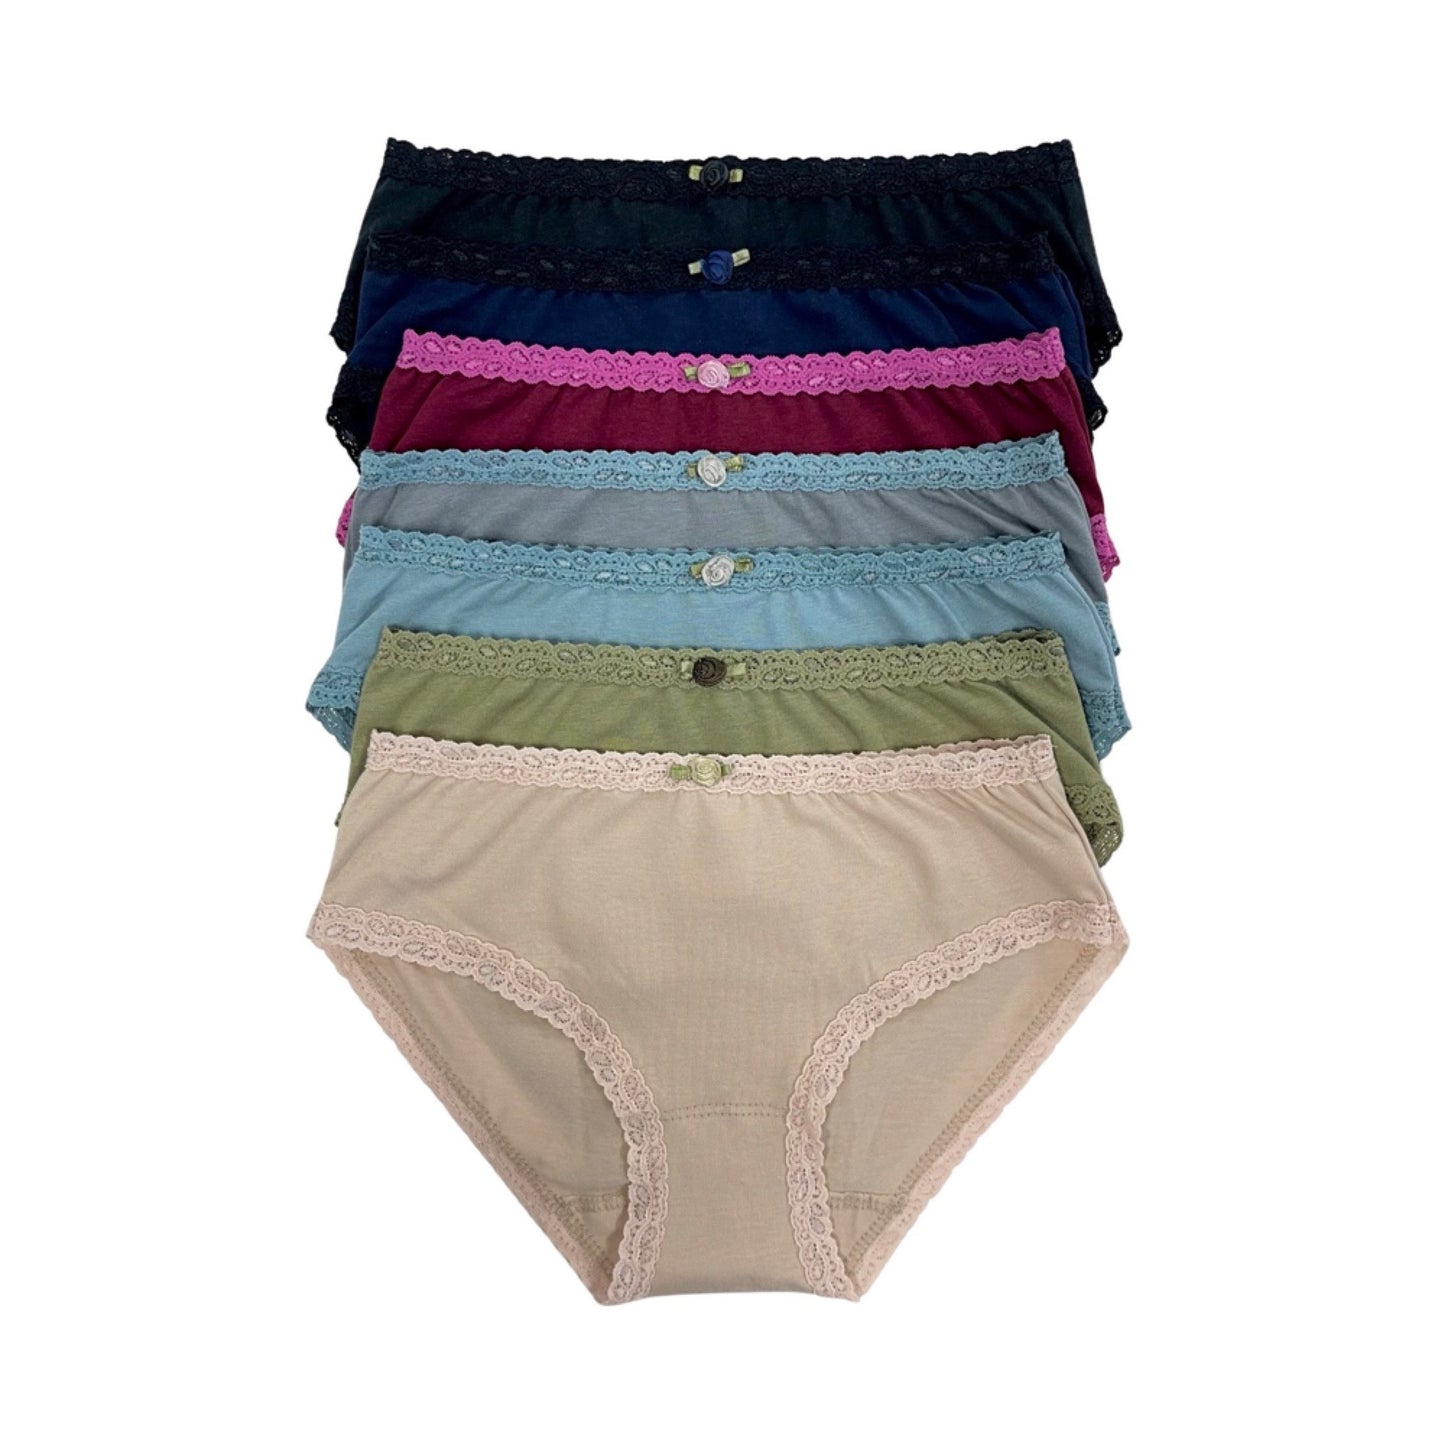 U20 Esme Girl's 7-Pack & 5-Pack Panty in Solid Colors – DoReMiFa-esme